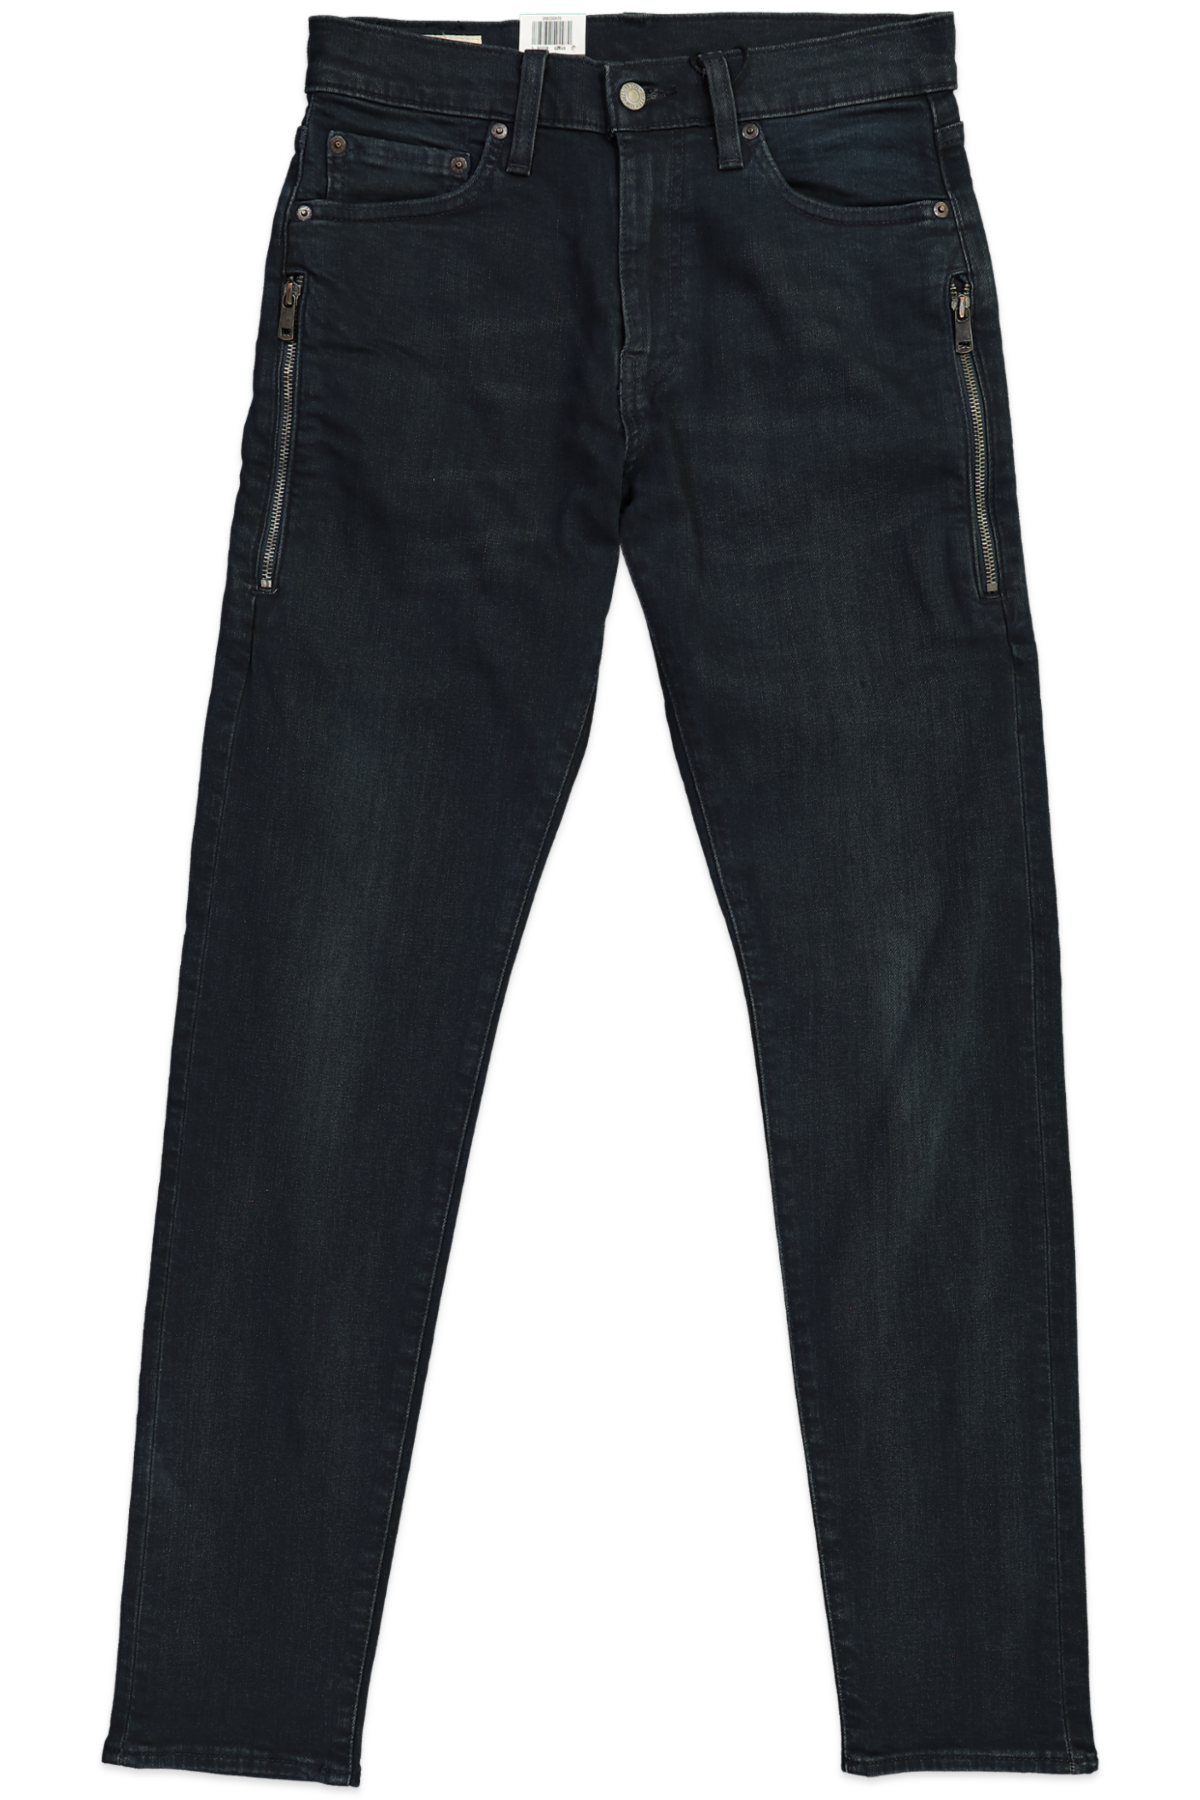 Levi’s Premium 512 Slim Taper Dark Men’s Jeans Irregular